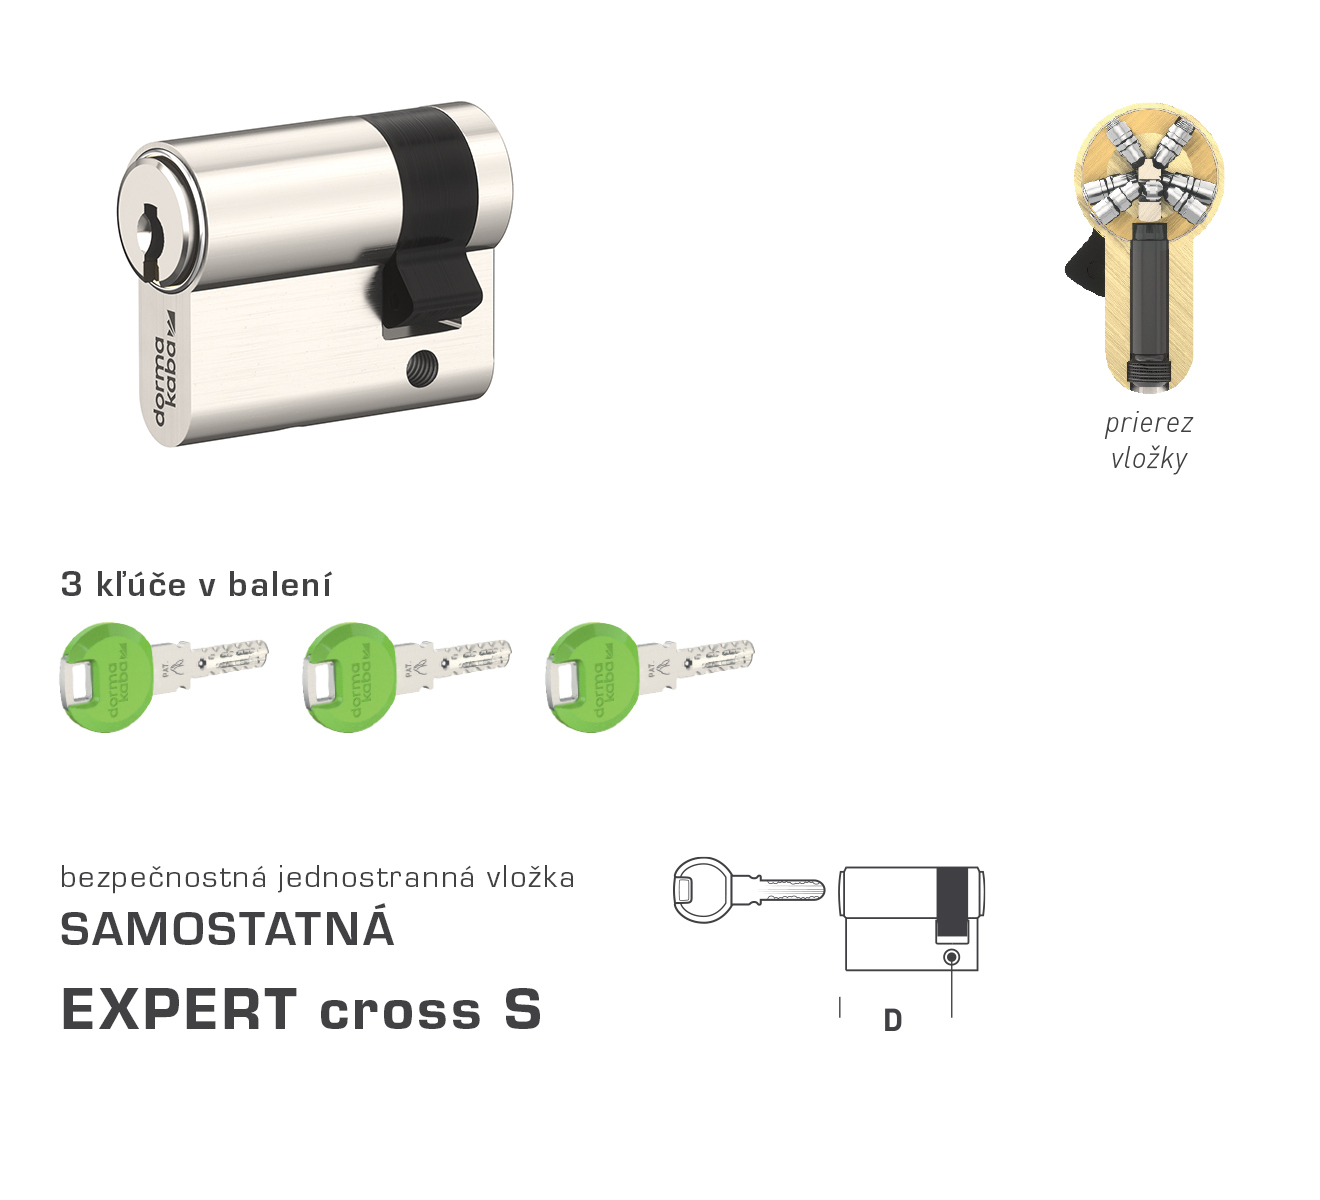 E-shop DK - EXPERT cross S polvložka 30 mm